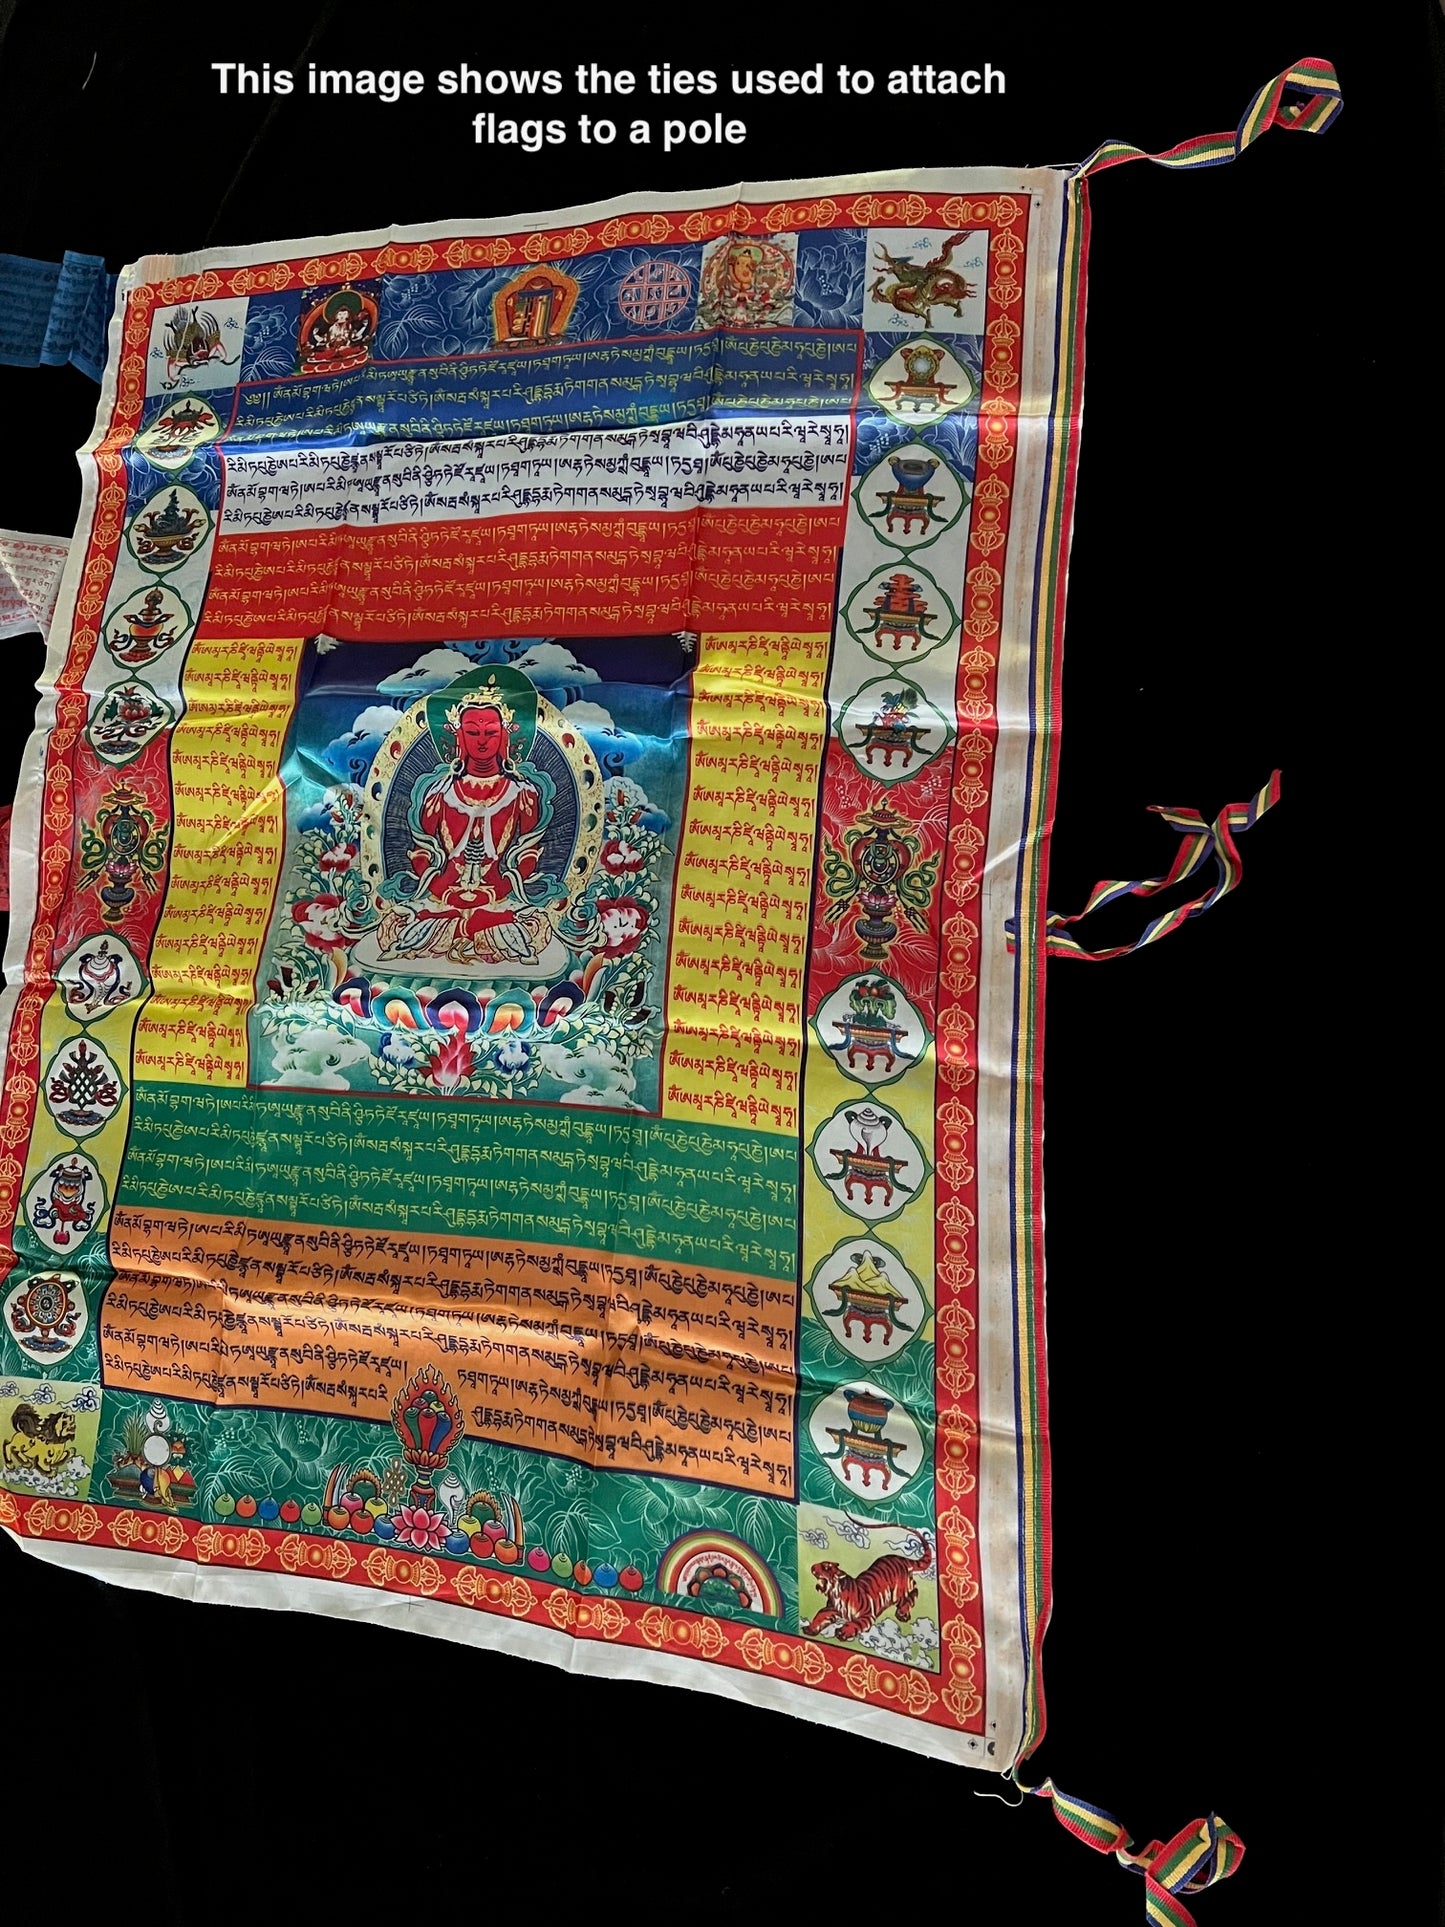 Énorme bannière de drapeau de prière du roi Gesar | Drapeaux de prière tibétains | 27 pouces x 36 pouces | 1 seul drapeau | Poly Soie | drapeau ou mur vertical